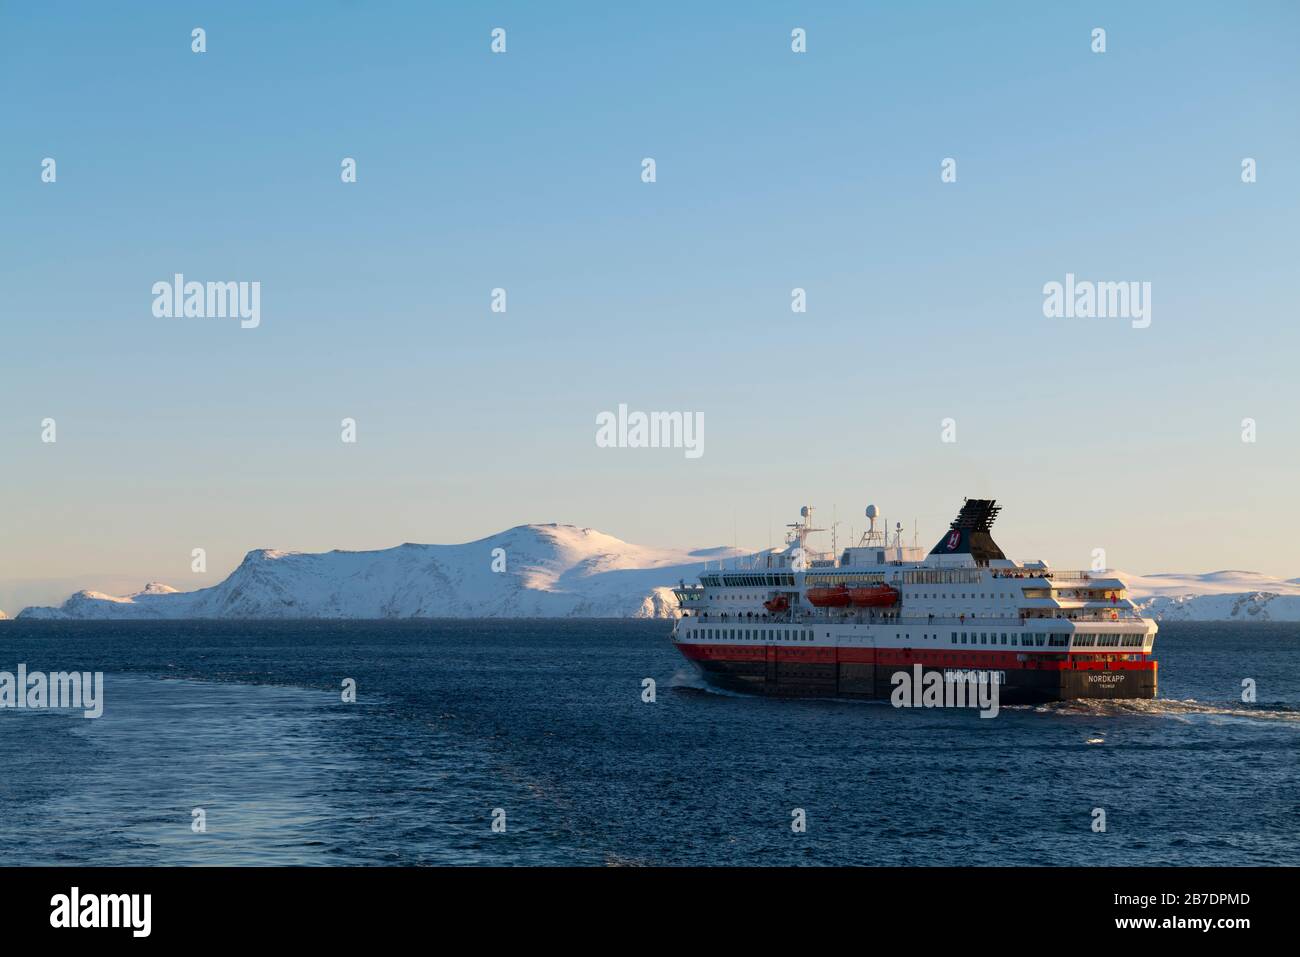 MS Nordkapp departing Havøysund, Norway. Stock Photo